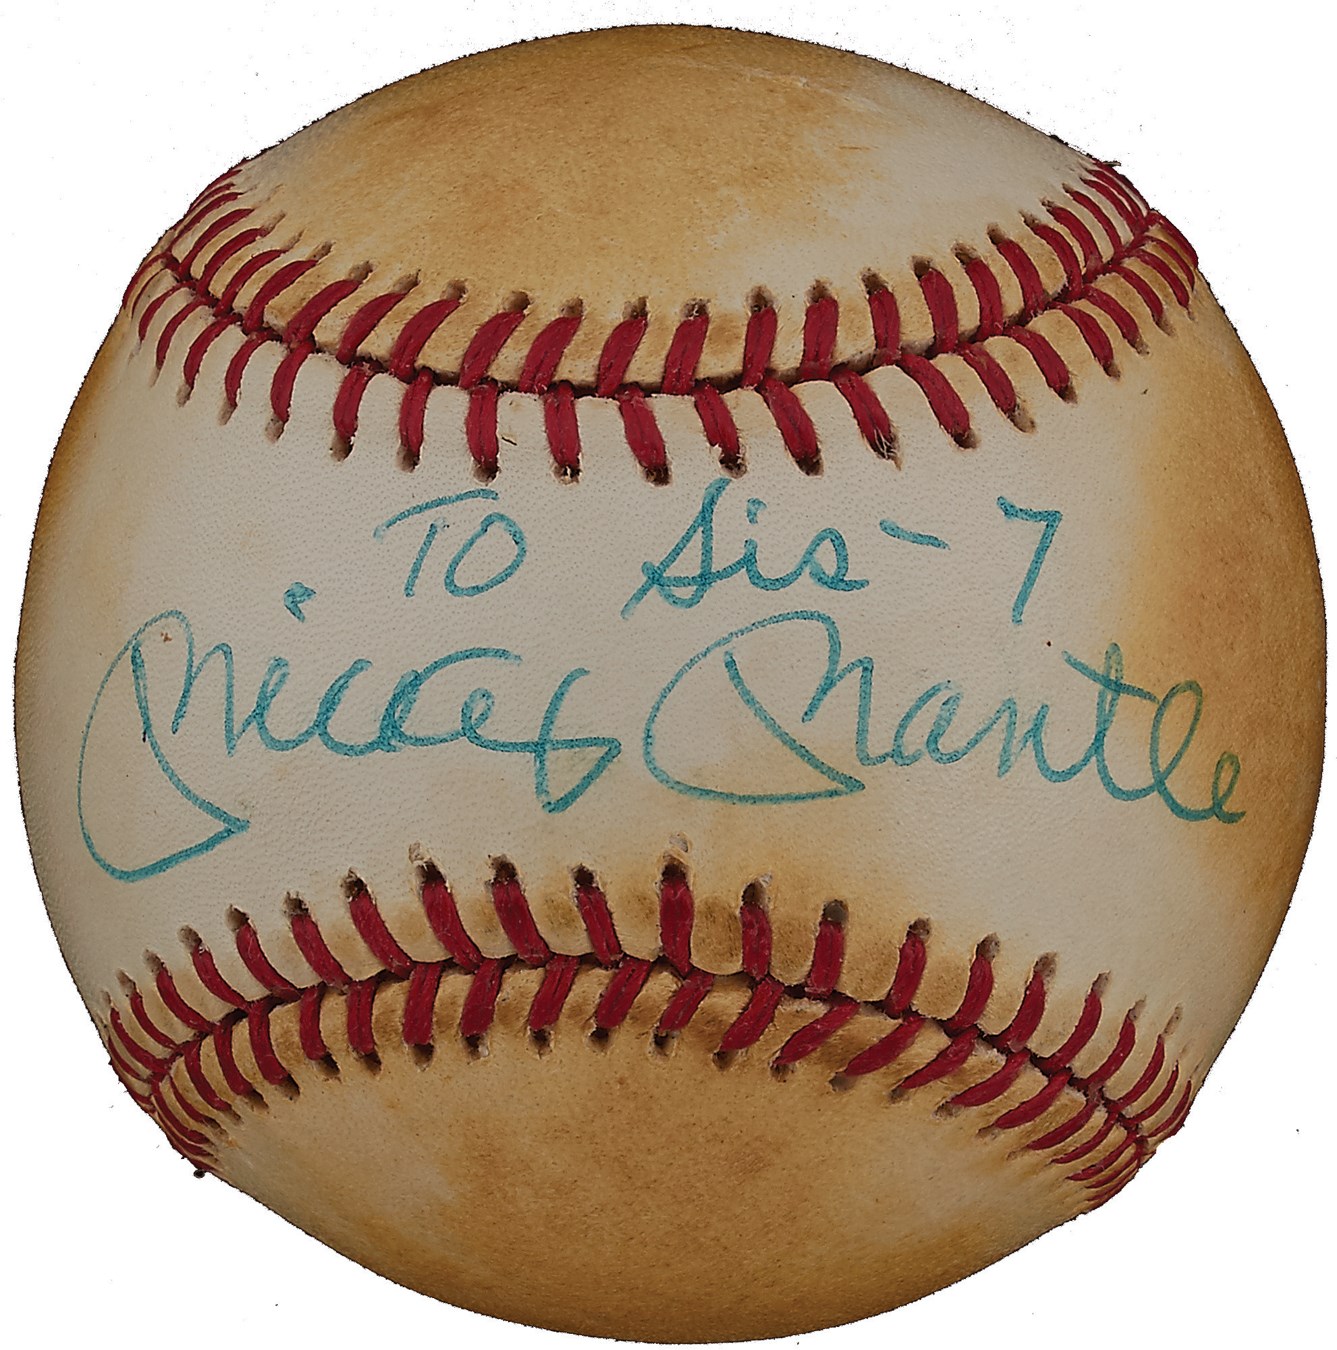 Baseball Autographs - Mickey Mantle Signed Baseball to His Sister (JSA LOA)